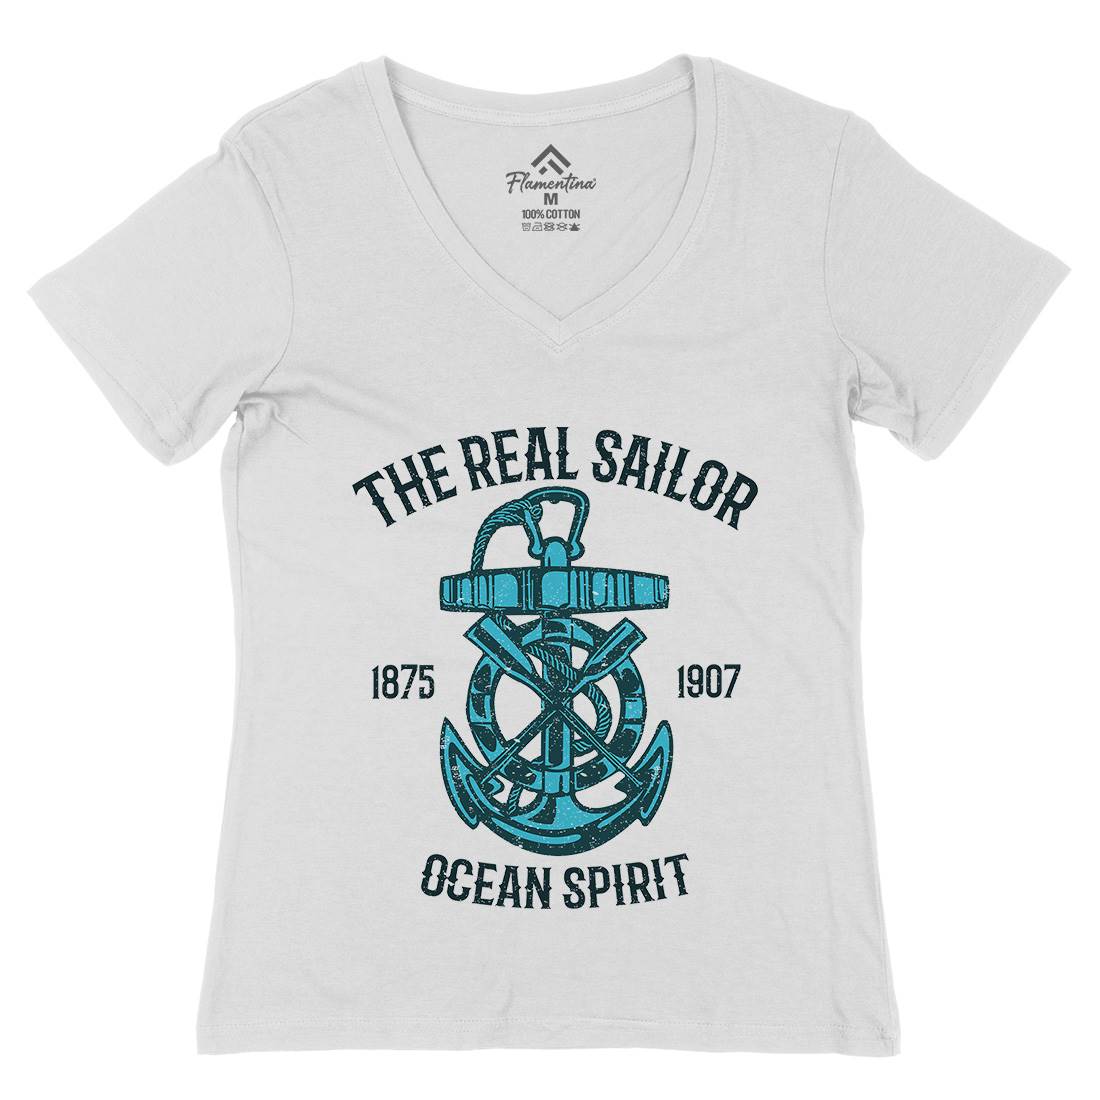 Ocean Spirit Womens Organic V-Neck T-Shirt Navy A097